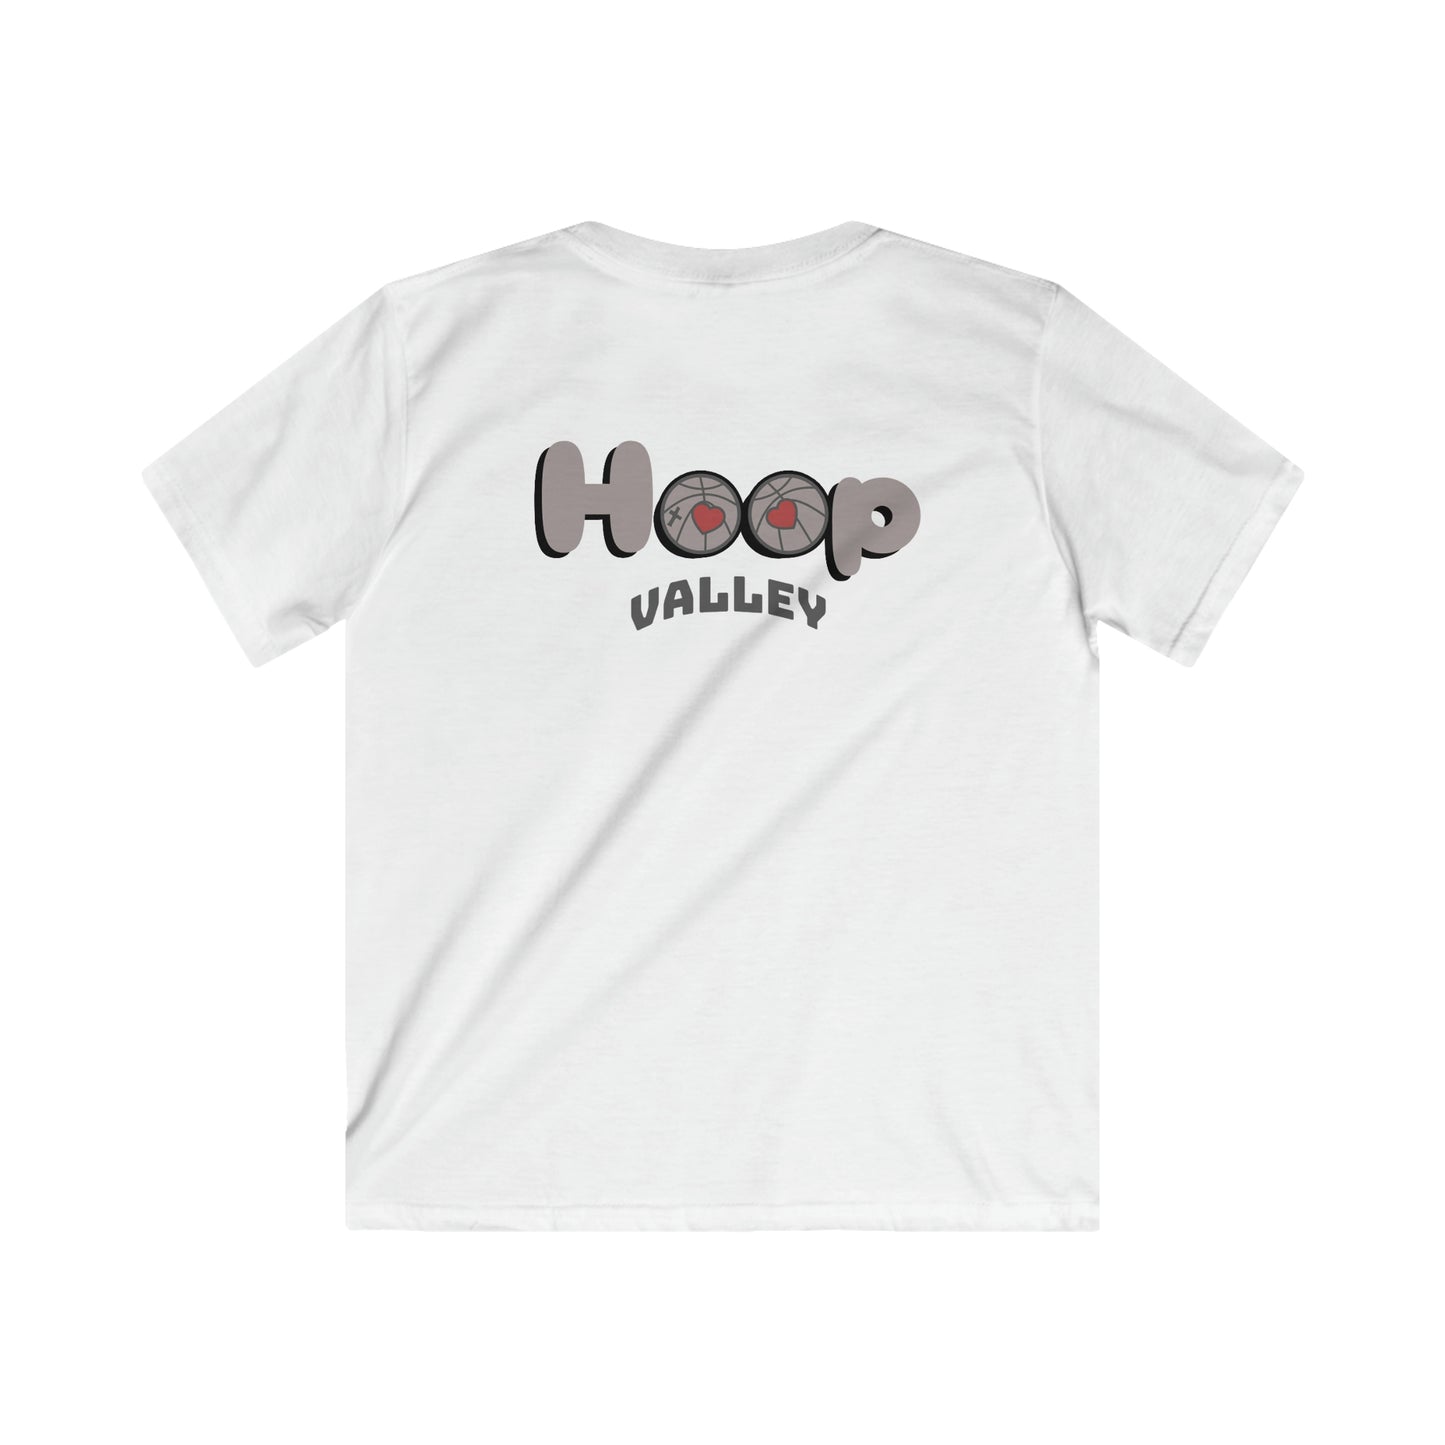 Kids Hoop Valley T-shirt Brown Logo